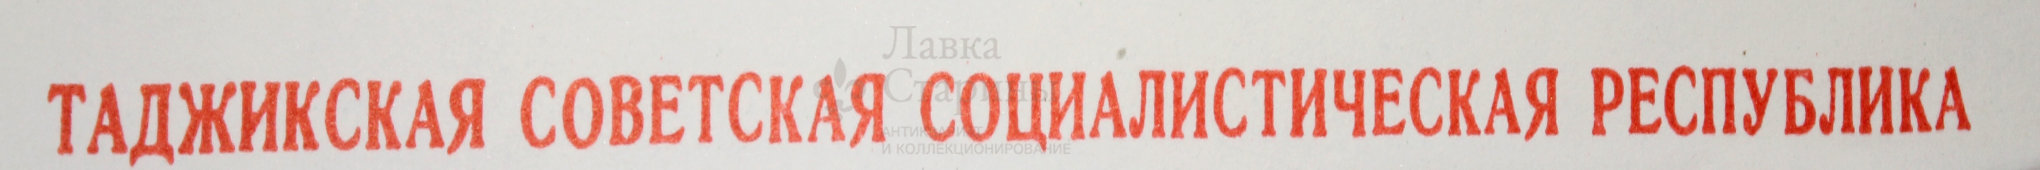 Советский плакат «Таджикская советская социалистическая республика», художник Г. Фишер, Москва, 1972 г.